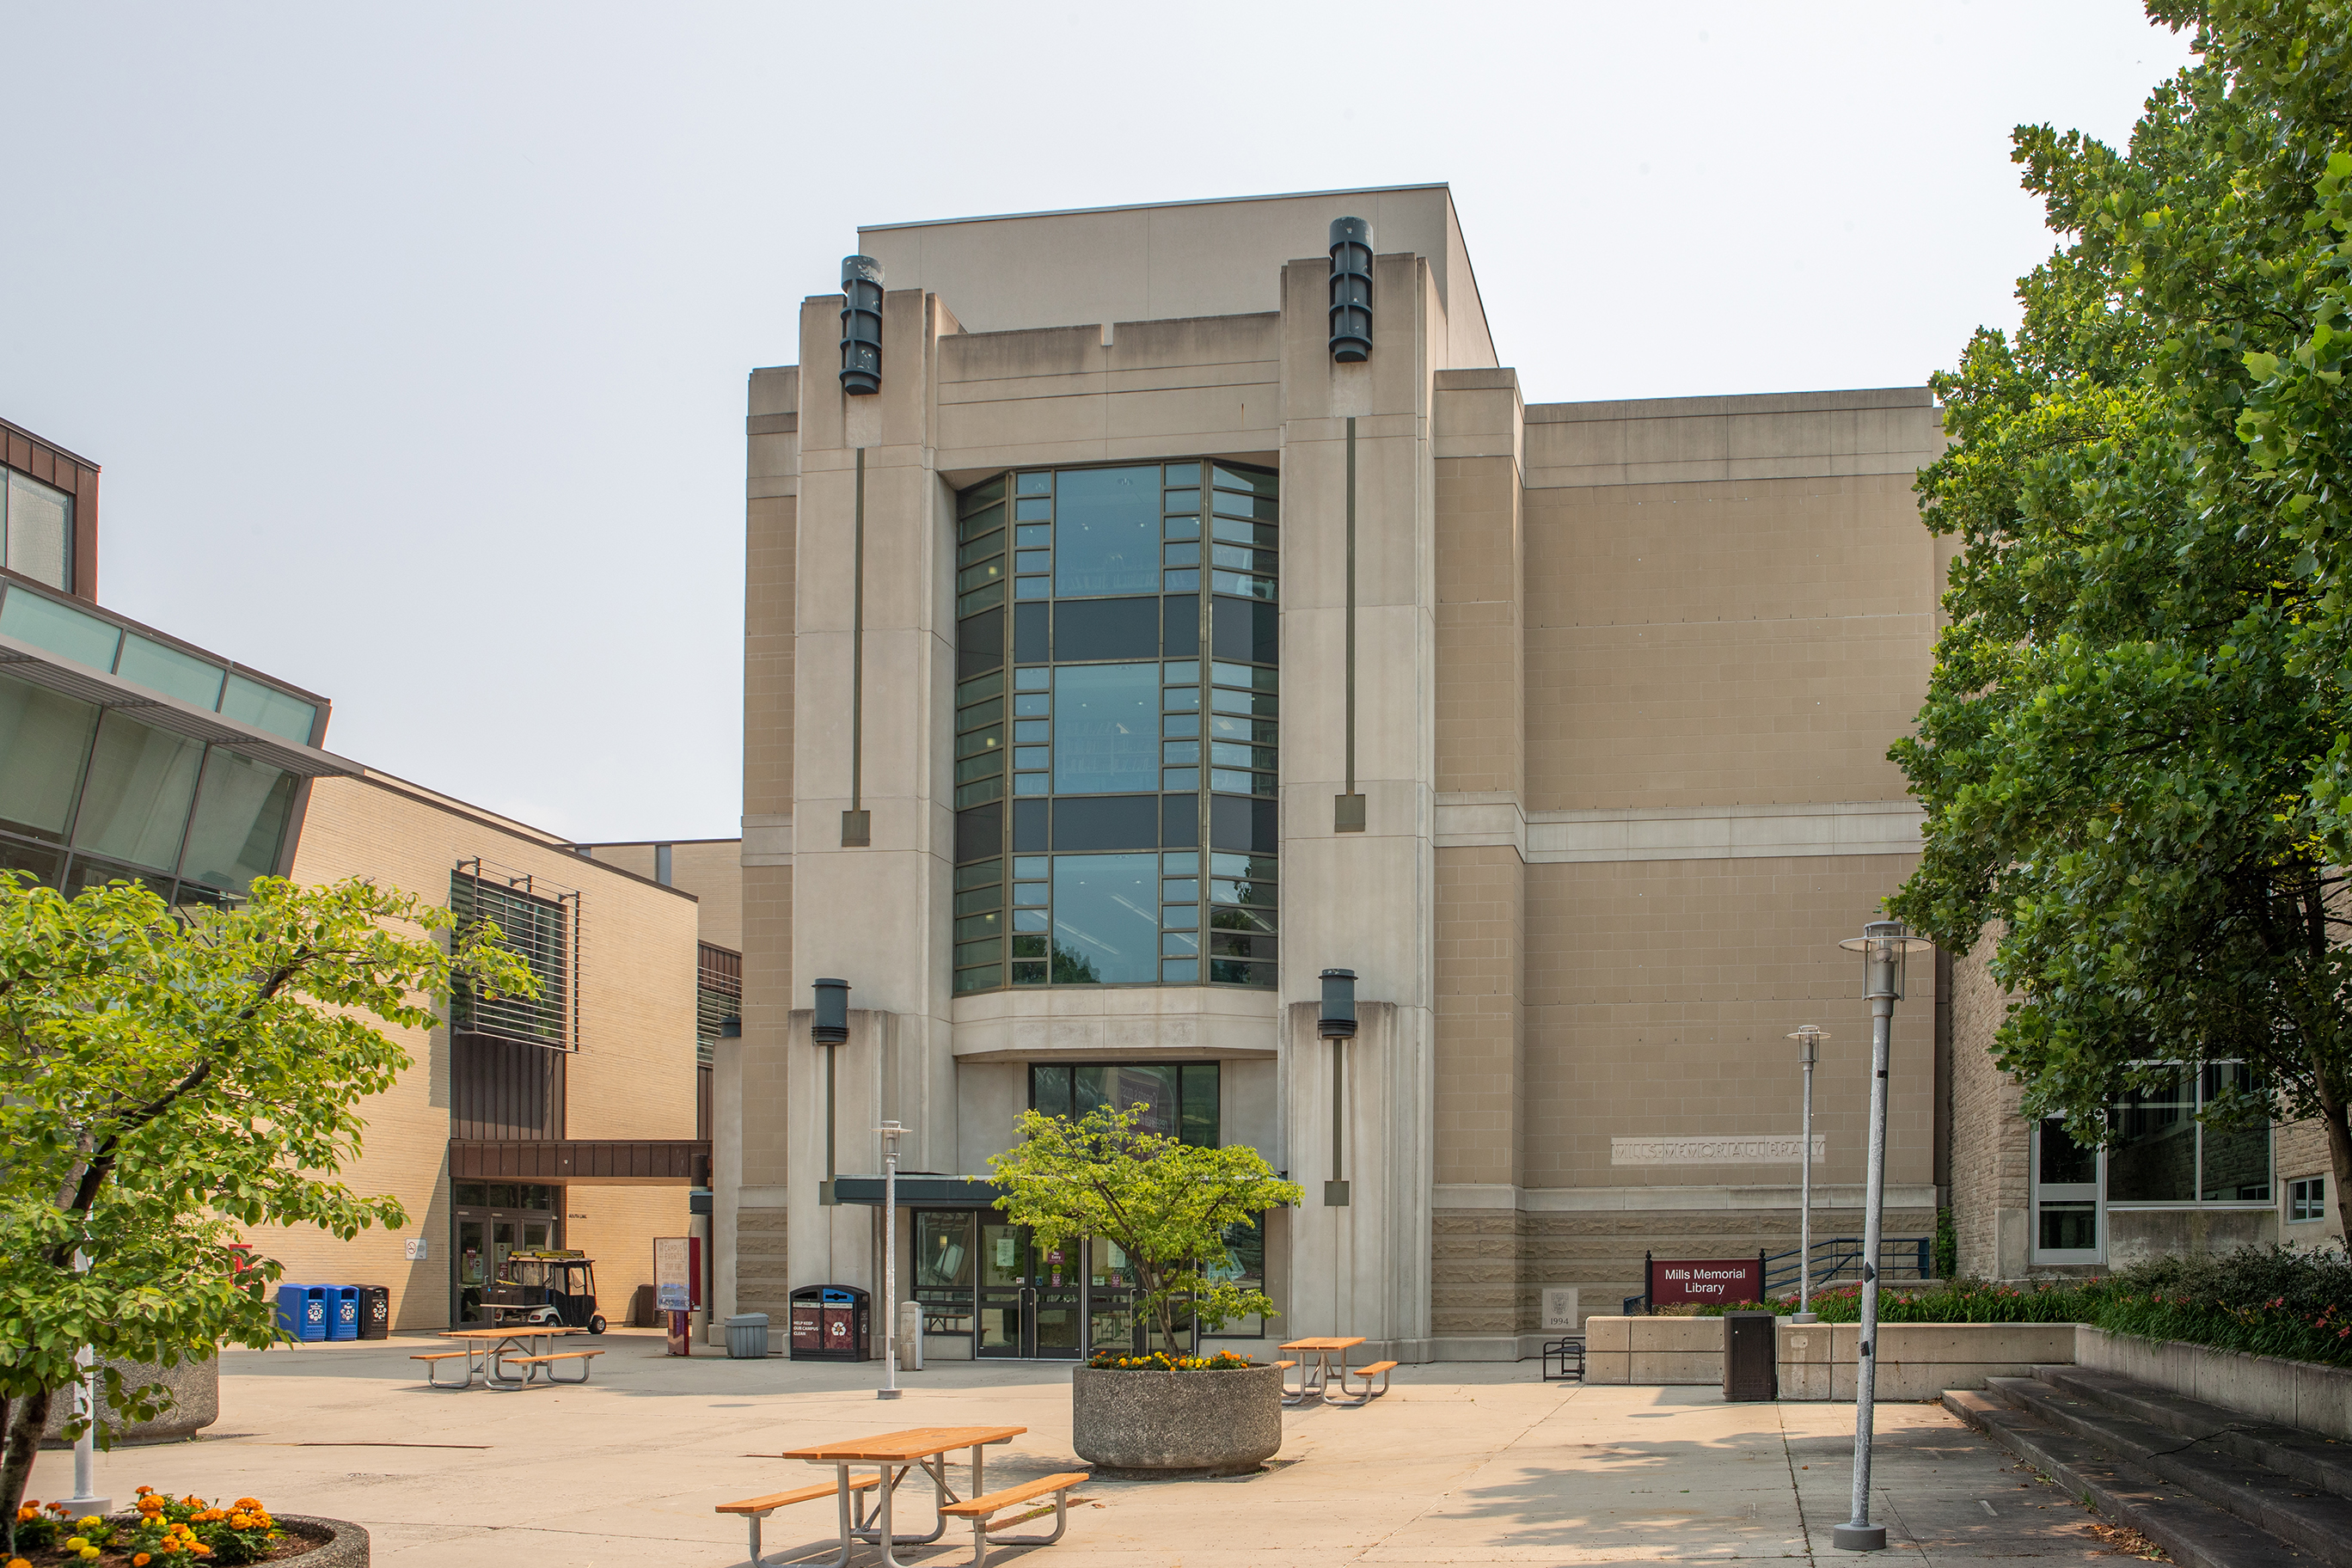 Mills Memorial Library in summer can been seen. 